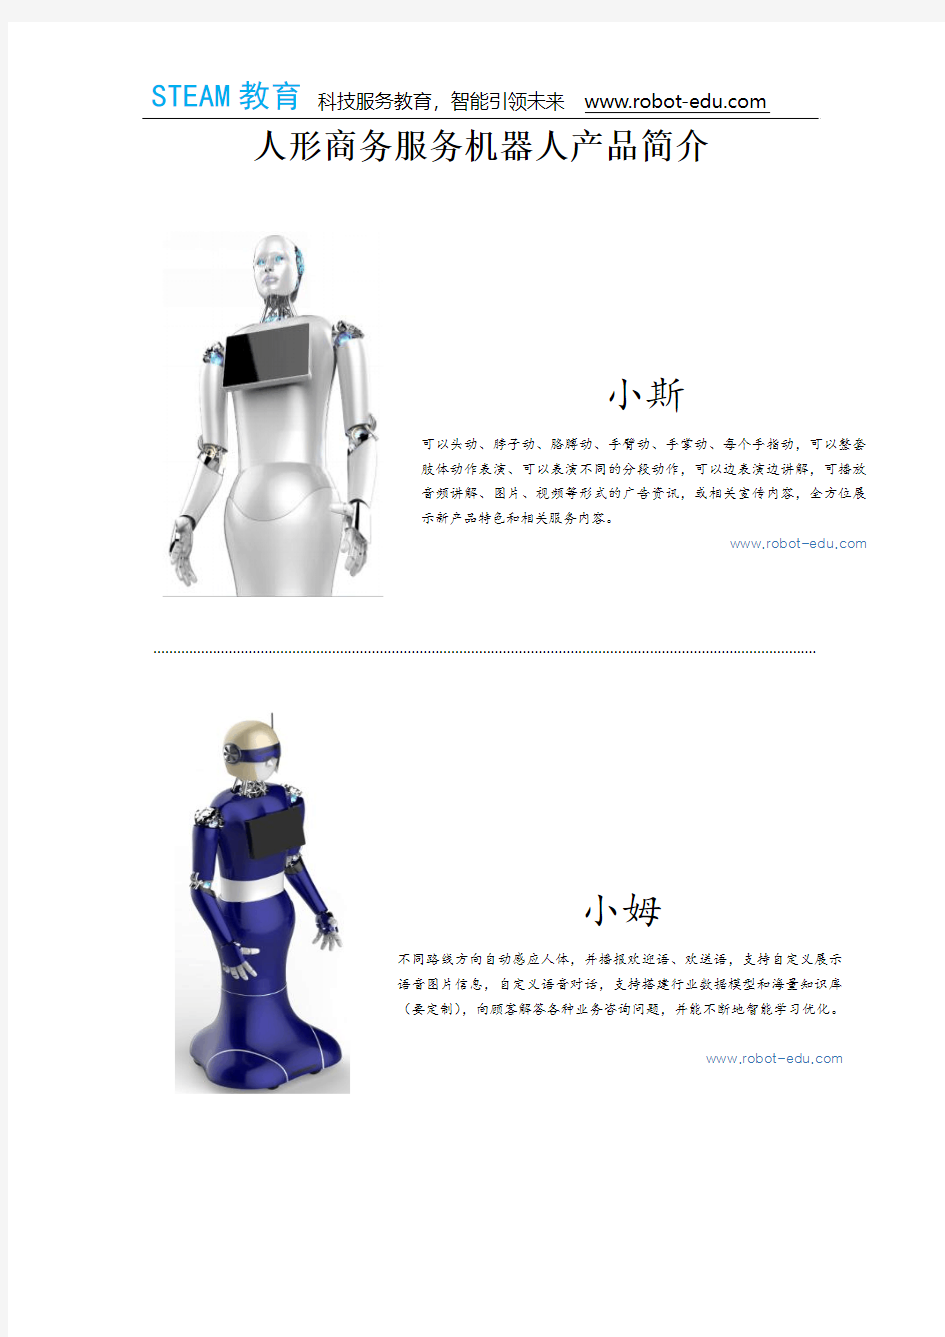 人形商务服务机器人产品简介